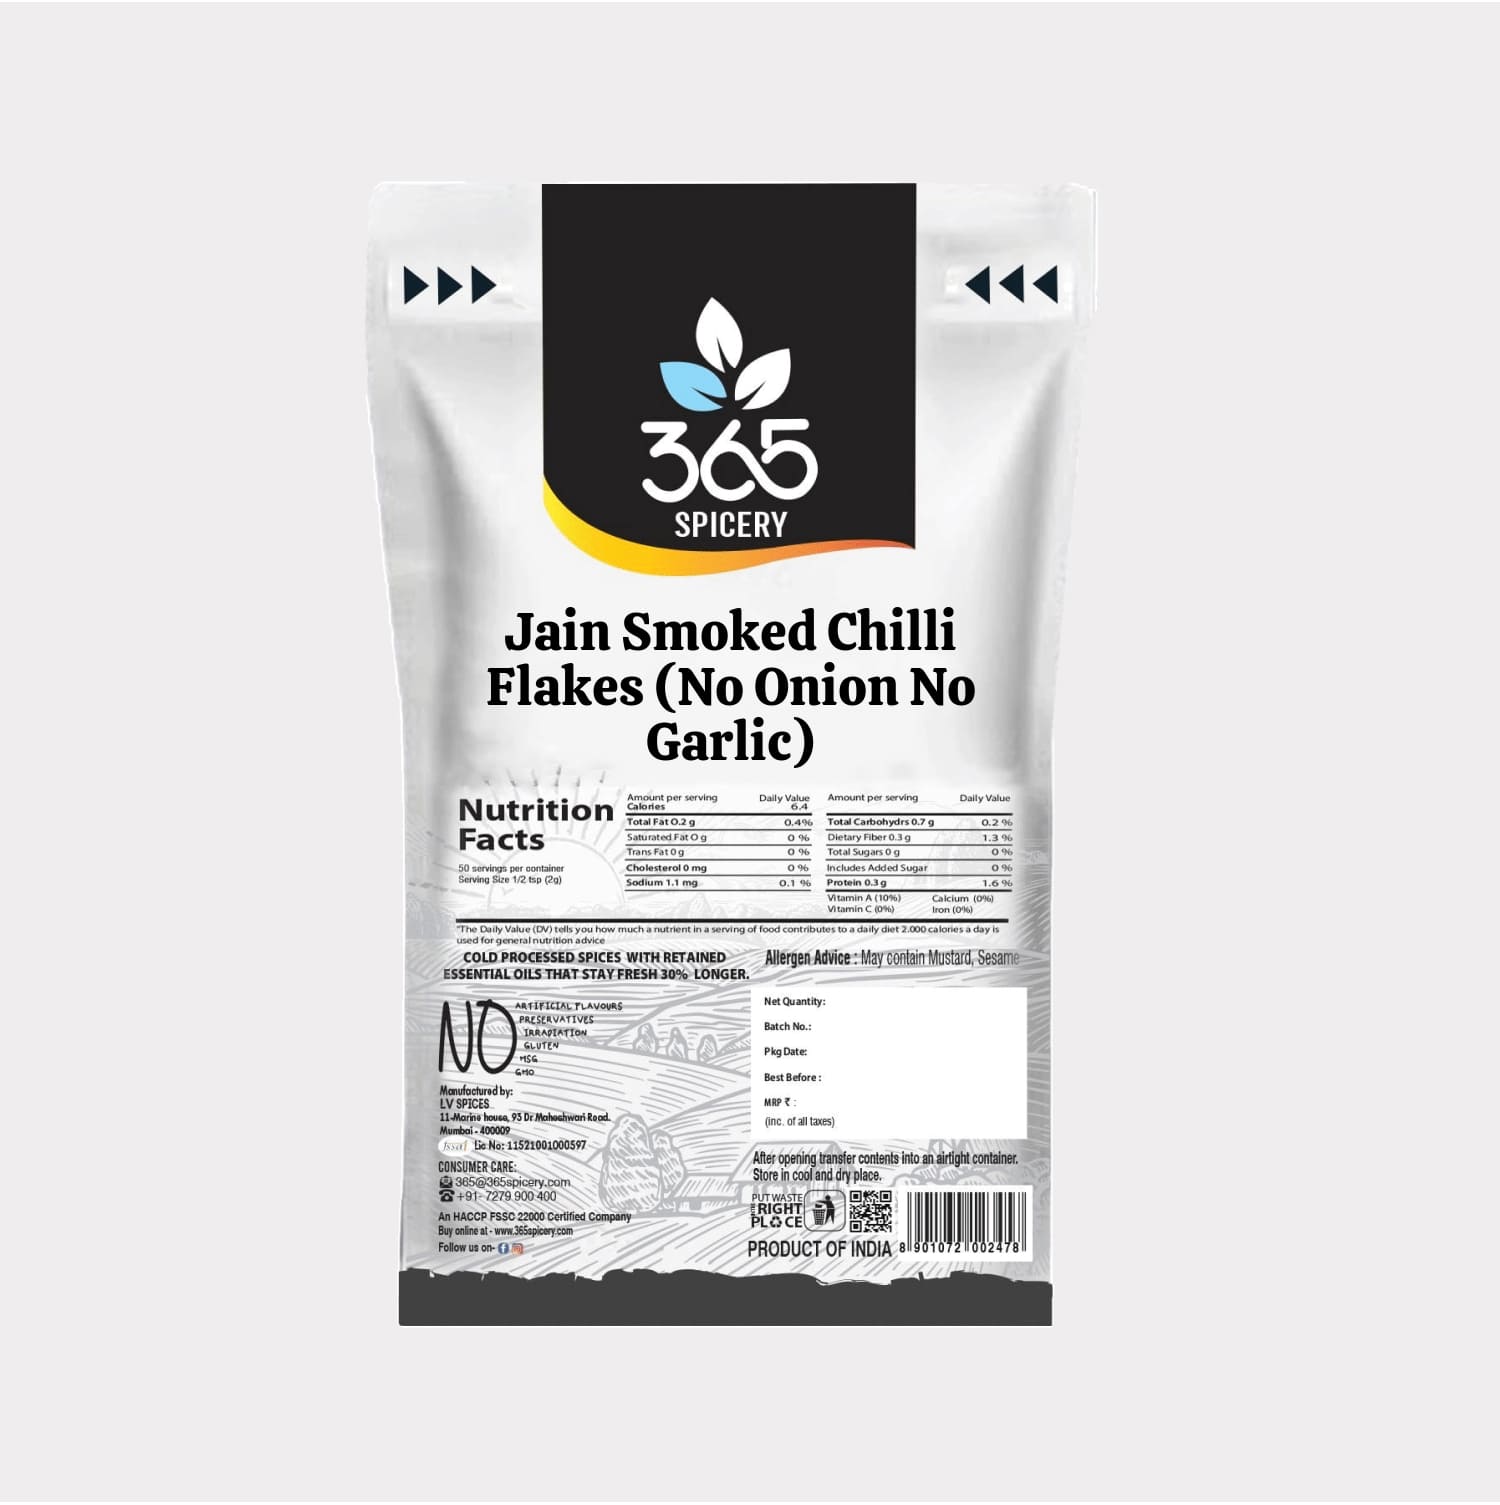 Jain Smoked Chilli Flakes (No Onion No Garlic)